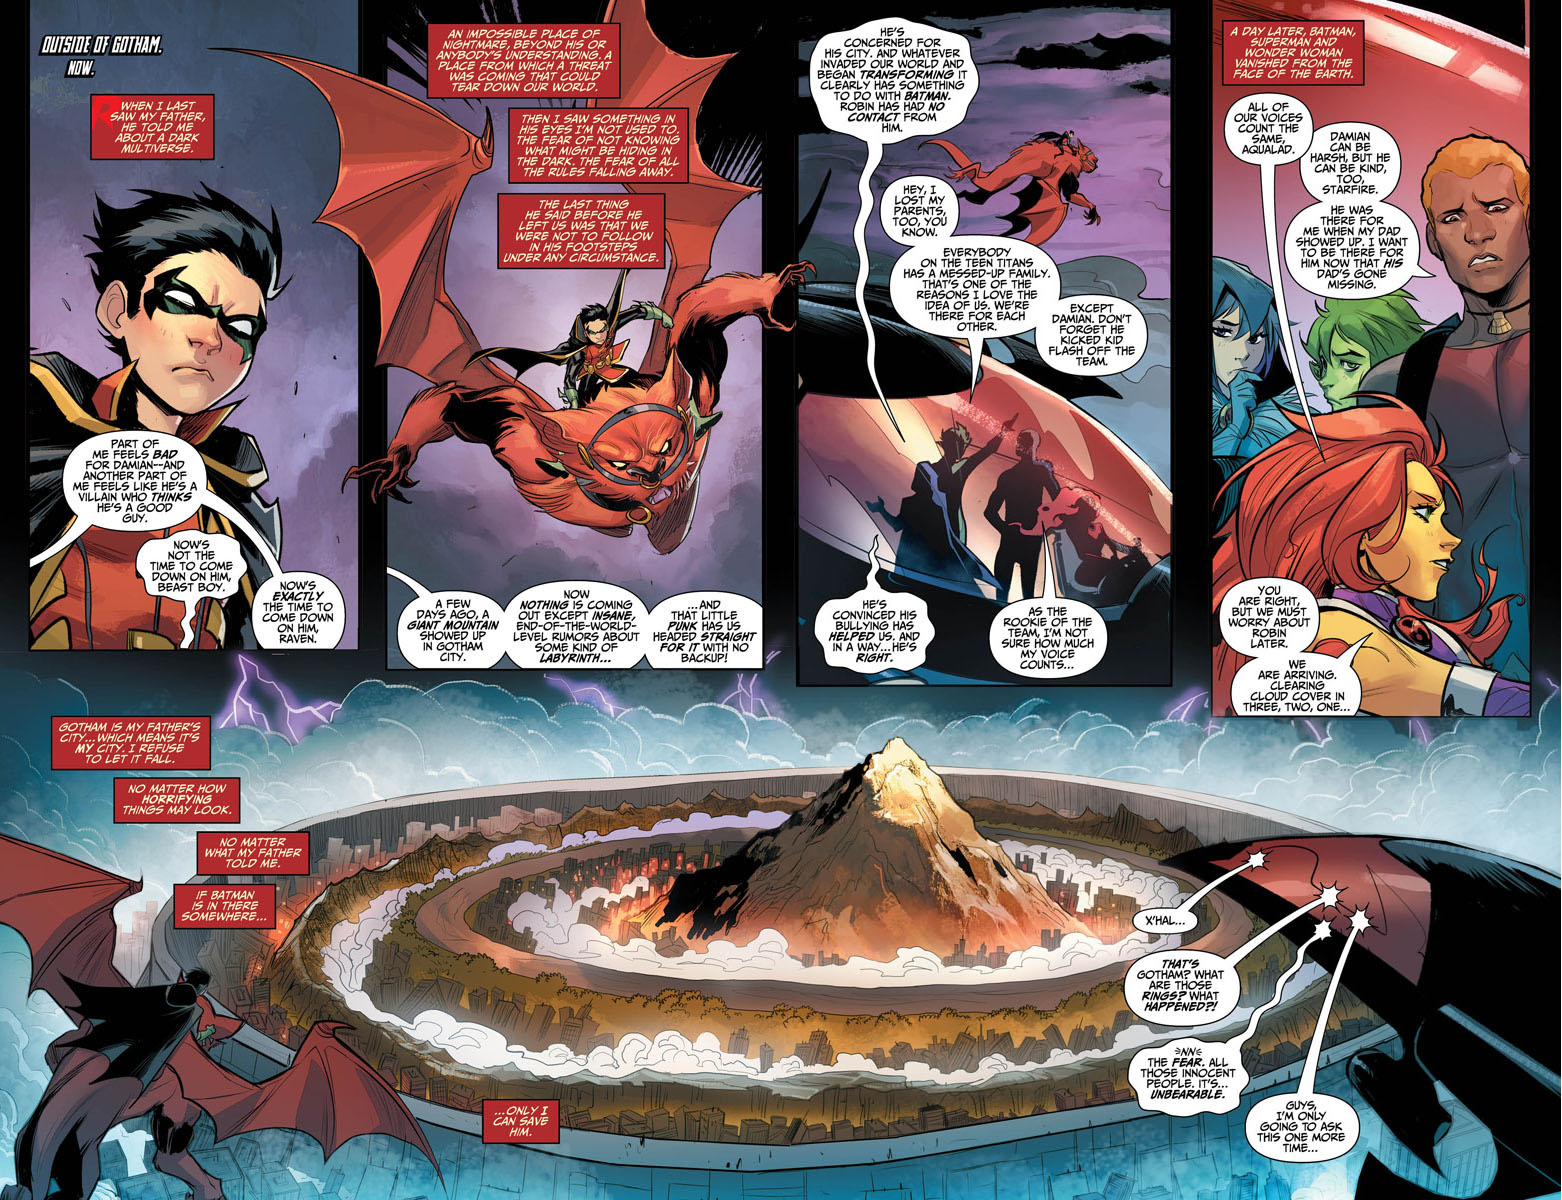 蝙蝠俠與小丑的混合體「大笑蝙蝠俠」襲擊高譚市，羅賓率領「高譚市反抗軍」對抗